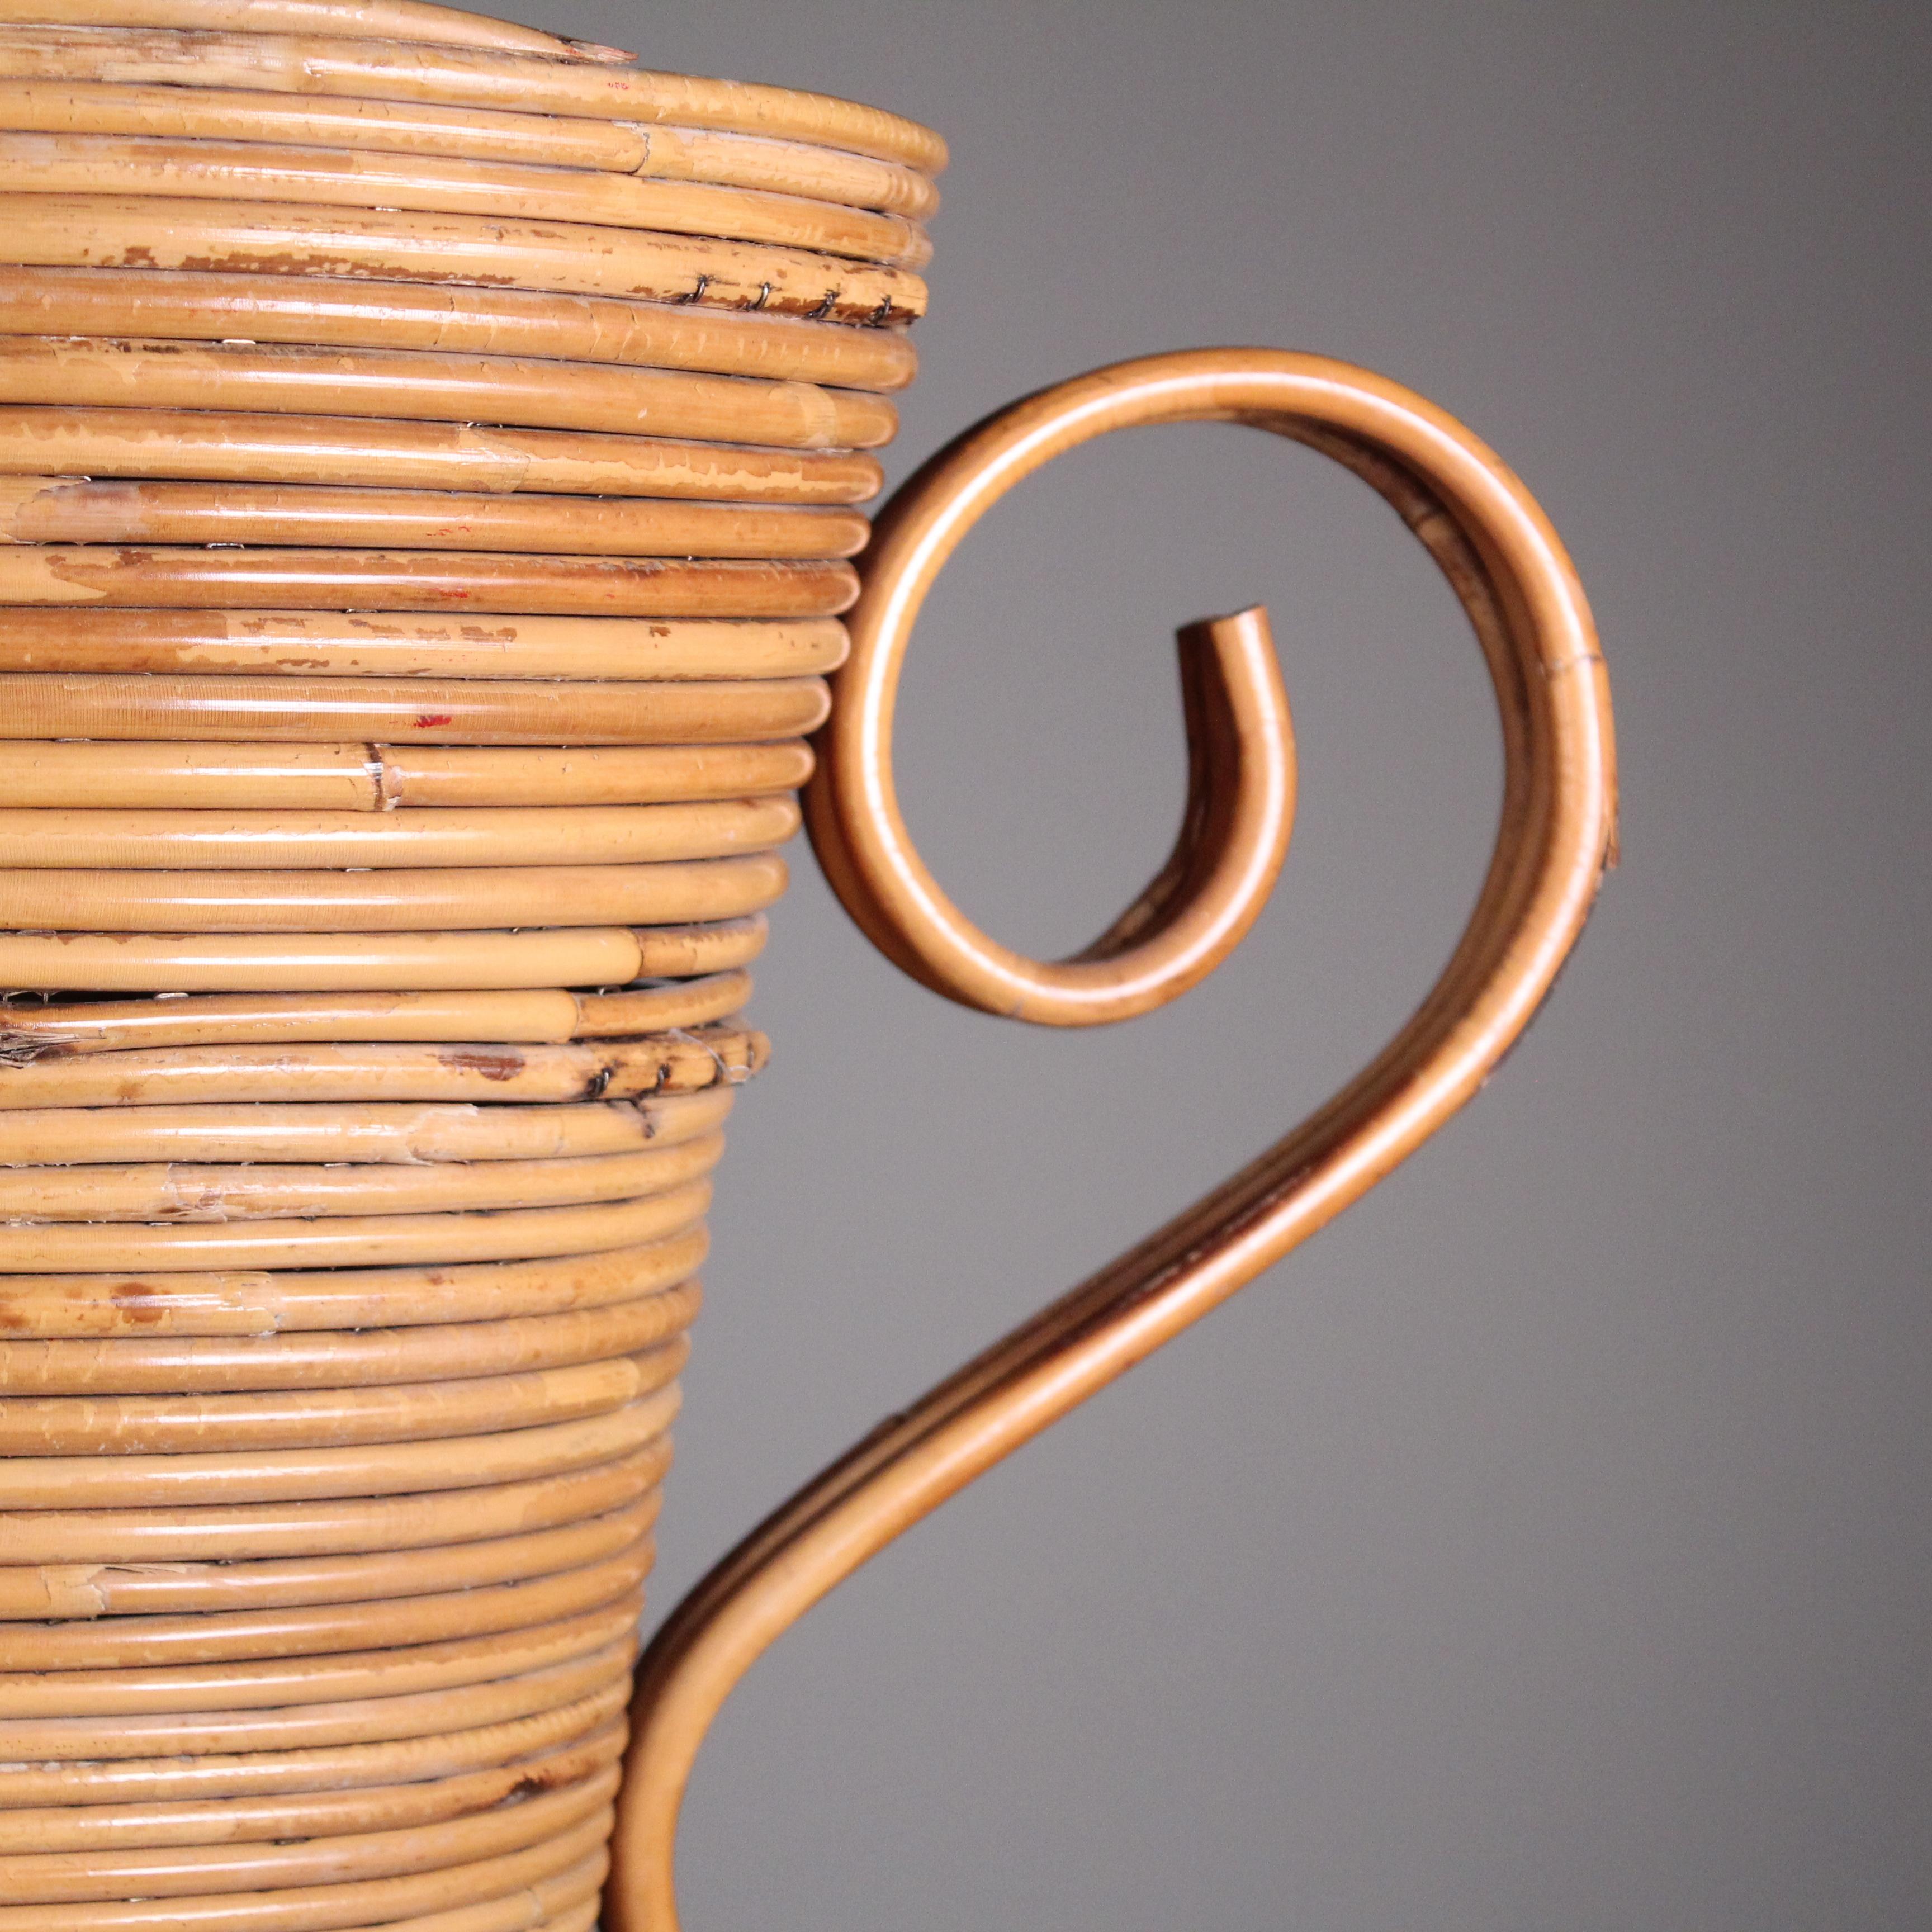 Replongez dans le charme bohème de 1969 avec le vase en rotin de Vivai del Sud. Ce joyau du design capture l'essence de la sophistication décontractée de l'époque, offrant un clin d'œil nostalgique à l'esprit de créativité libre. Le tressage